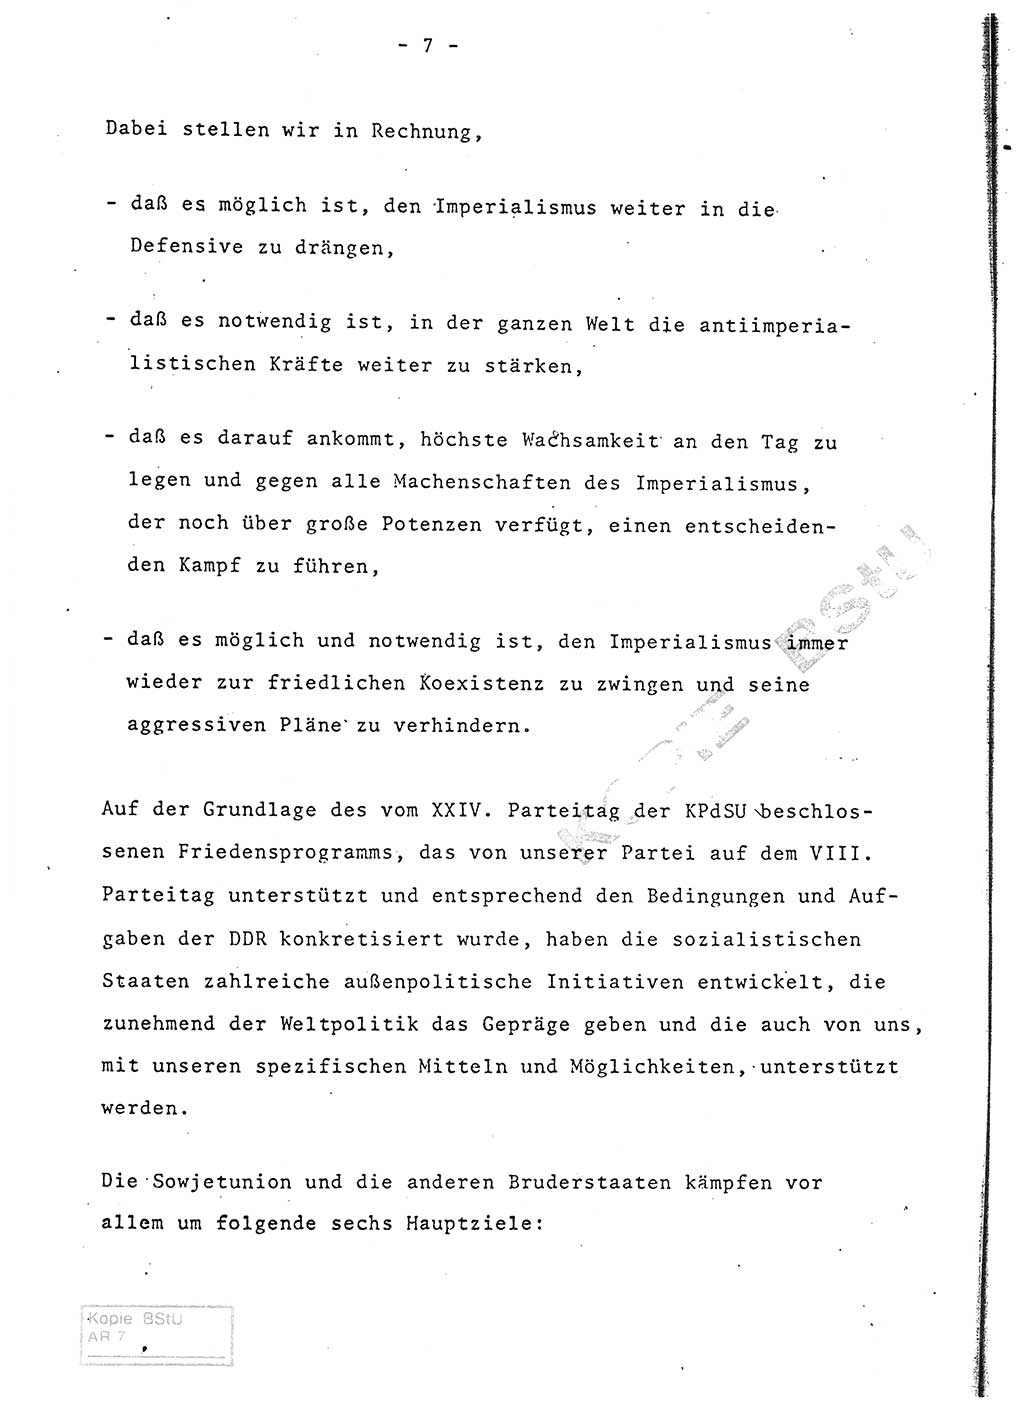 Referat (Entwurf) des Genossen Minister (Generaloberst Erich Mielke) auf der Dienstkonferenz 1972, Ministerium für Staatssicherheit (MfS) [Deutsche Demokratische Republik (DDR)], Der Minister, Geheime Verschlußsache (GVS) 008-150/72, Berlin 25.2.1972, Seite 7 (Ref. Entw. DK MfS DDR Min. GVS 008-150/72 1972, S. 7)